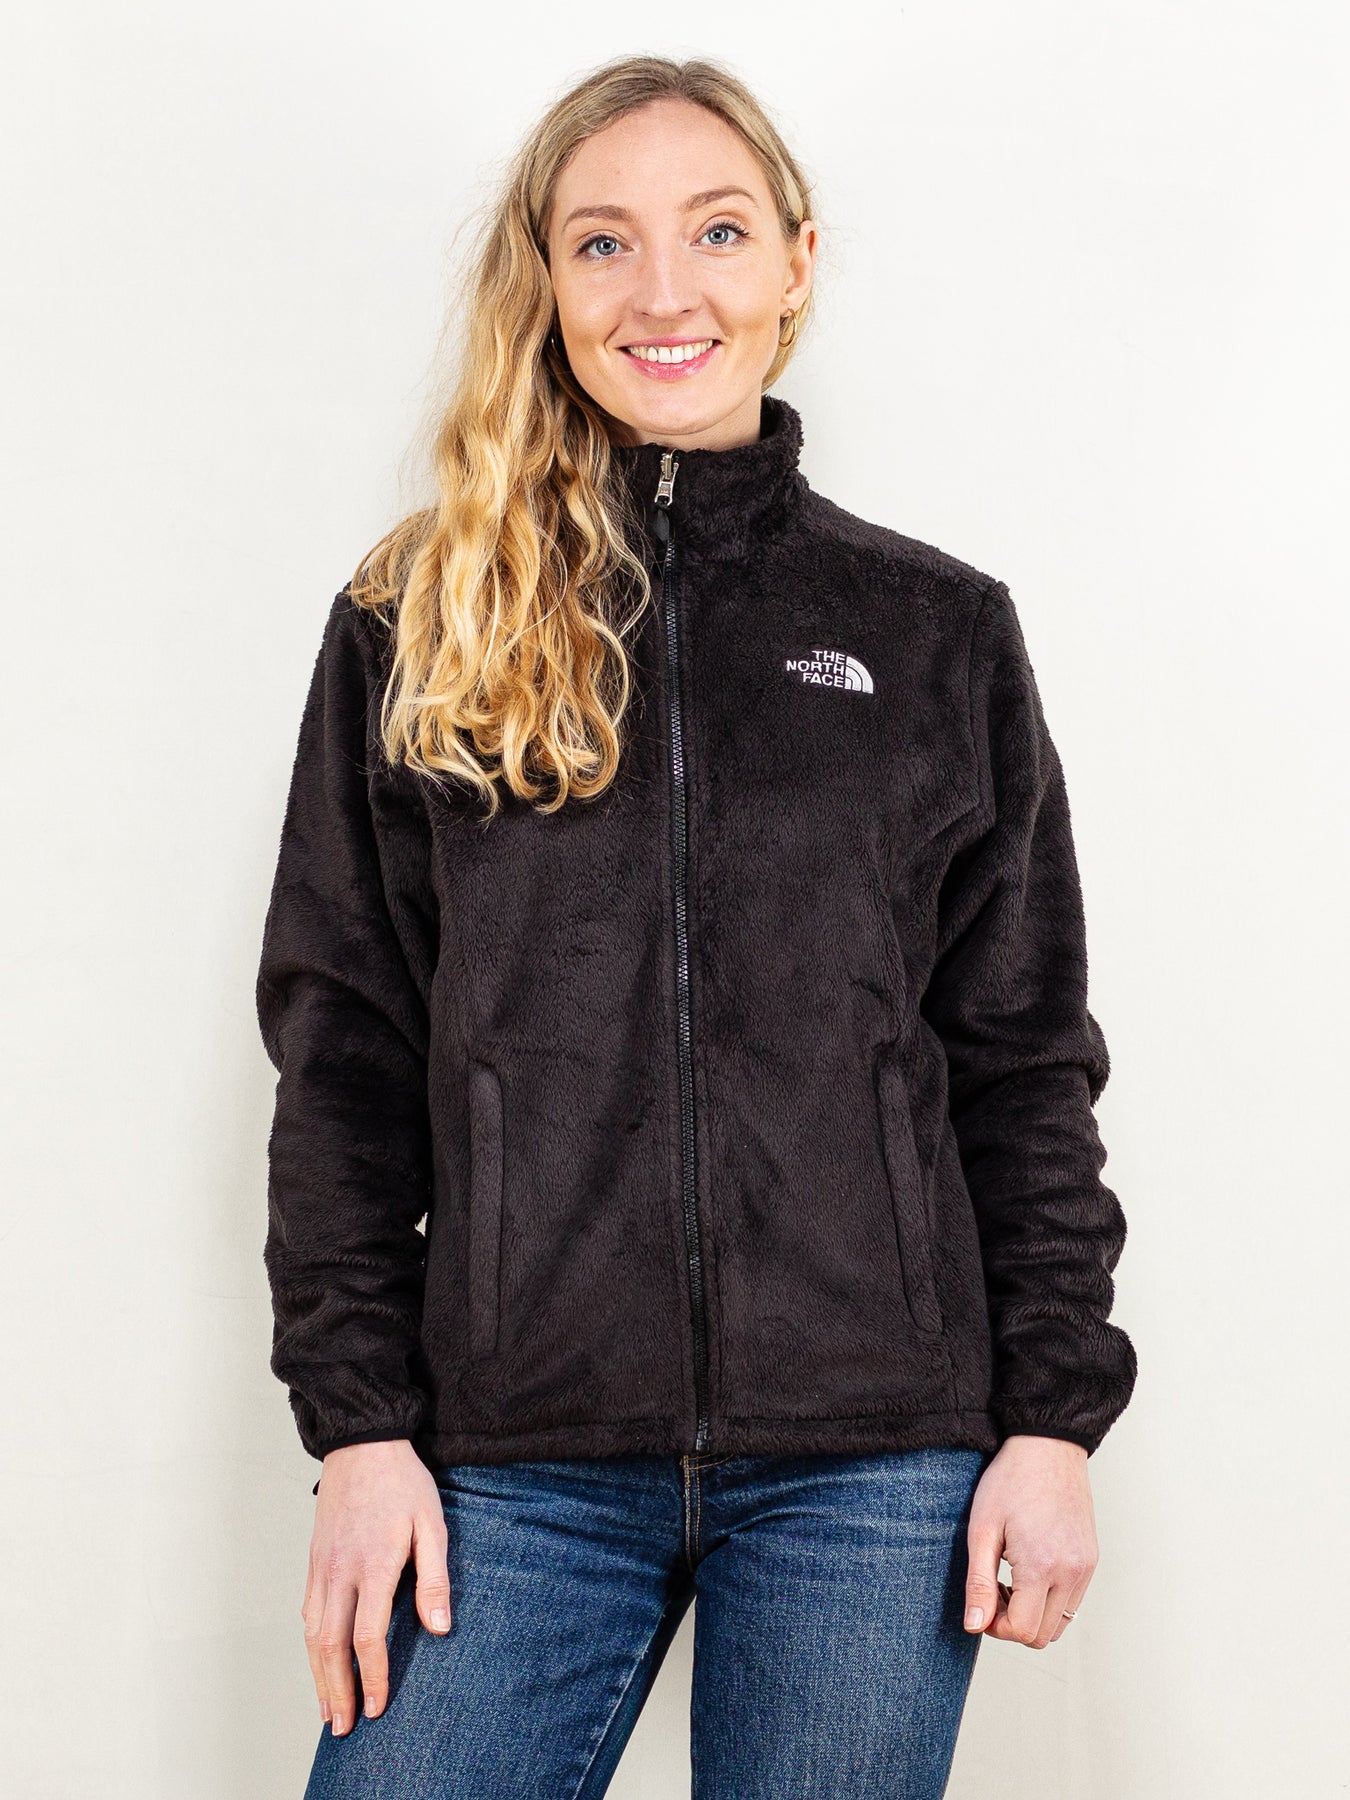 The North Face, Jackets & Coats, The North Face Gray Osito Fleece Jacket  Size Medium